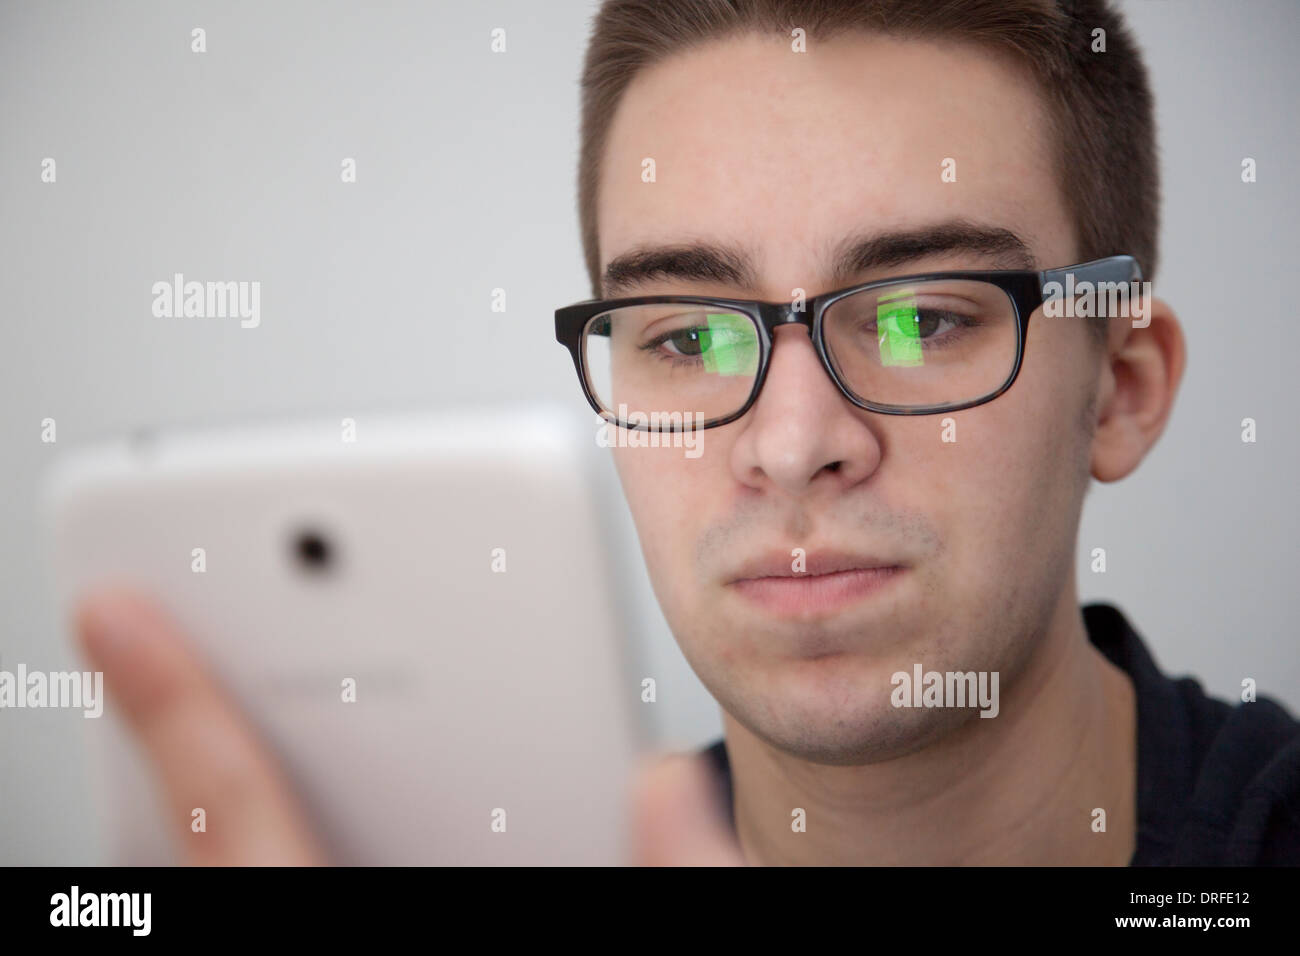 Gut aussehender junger Mann mit Brille, leichte Reflexion. Halten eine weiße digitale-Tablette. Ernsten Ausdruck. Stockfoto